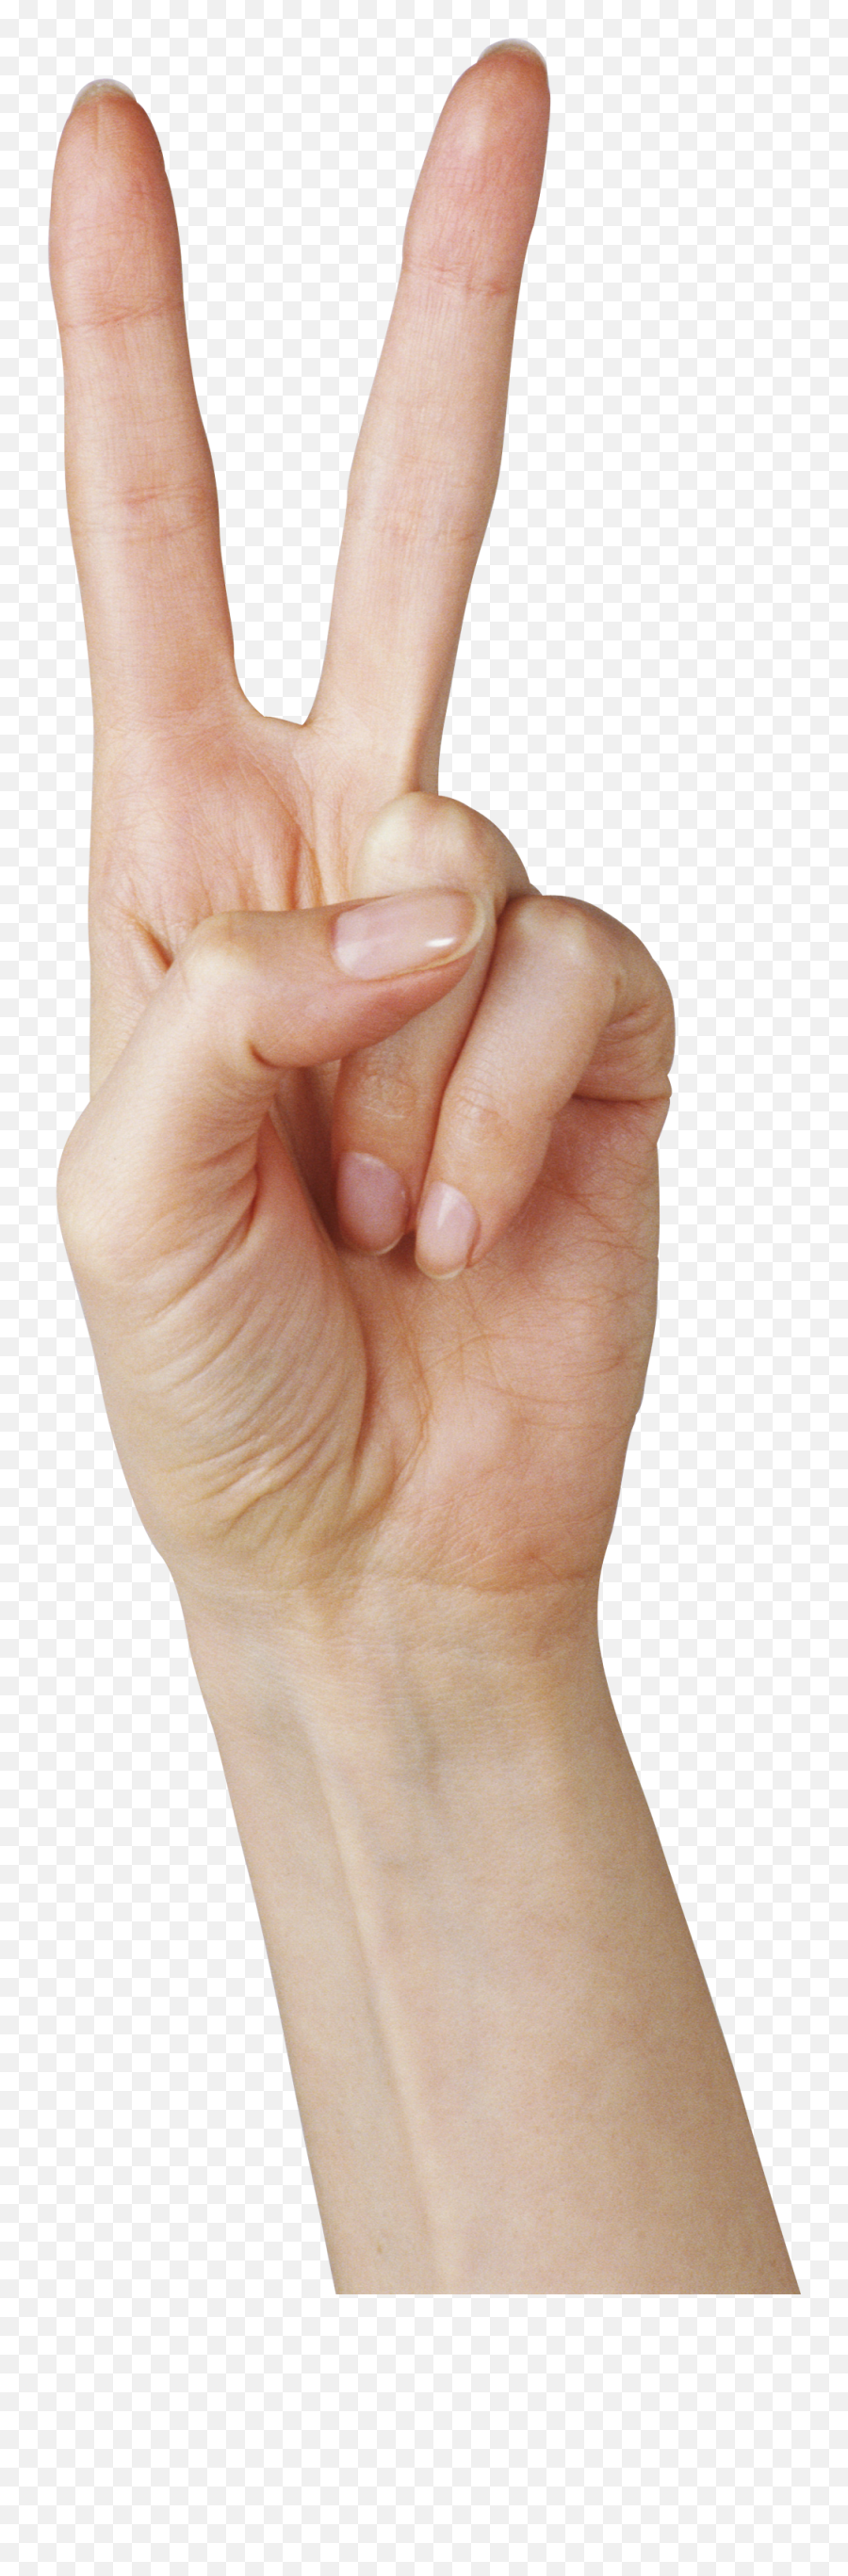 Hands Png Free Images - Sign Language Emoji,Hands Png